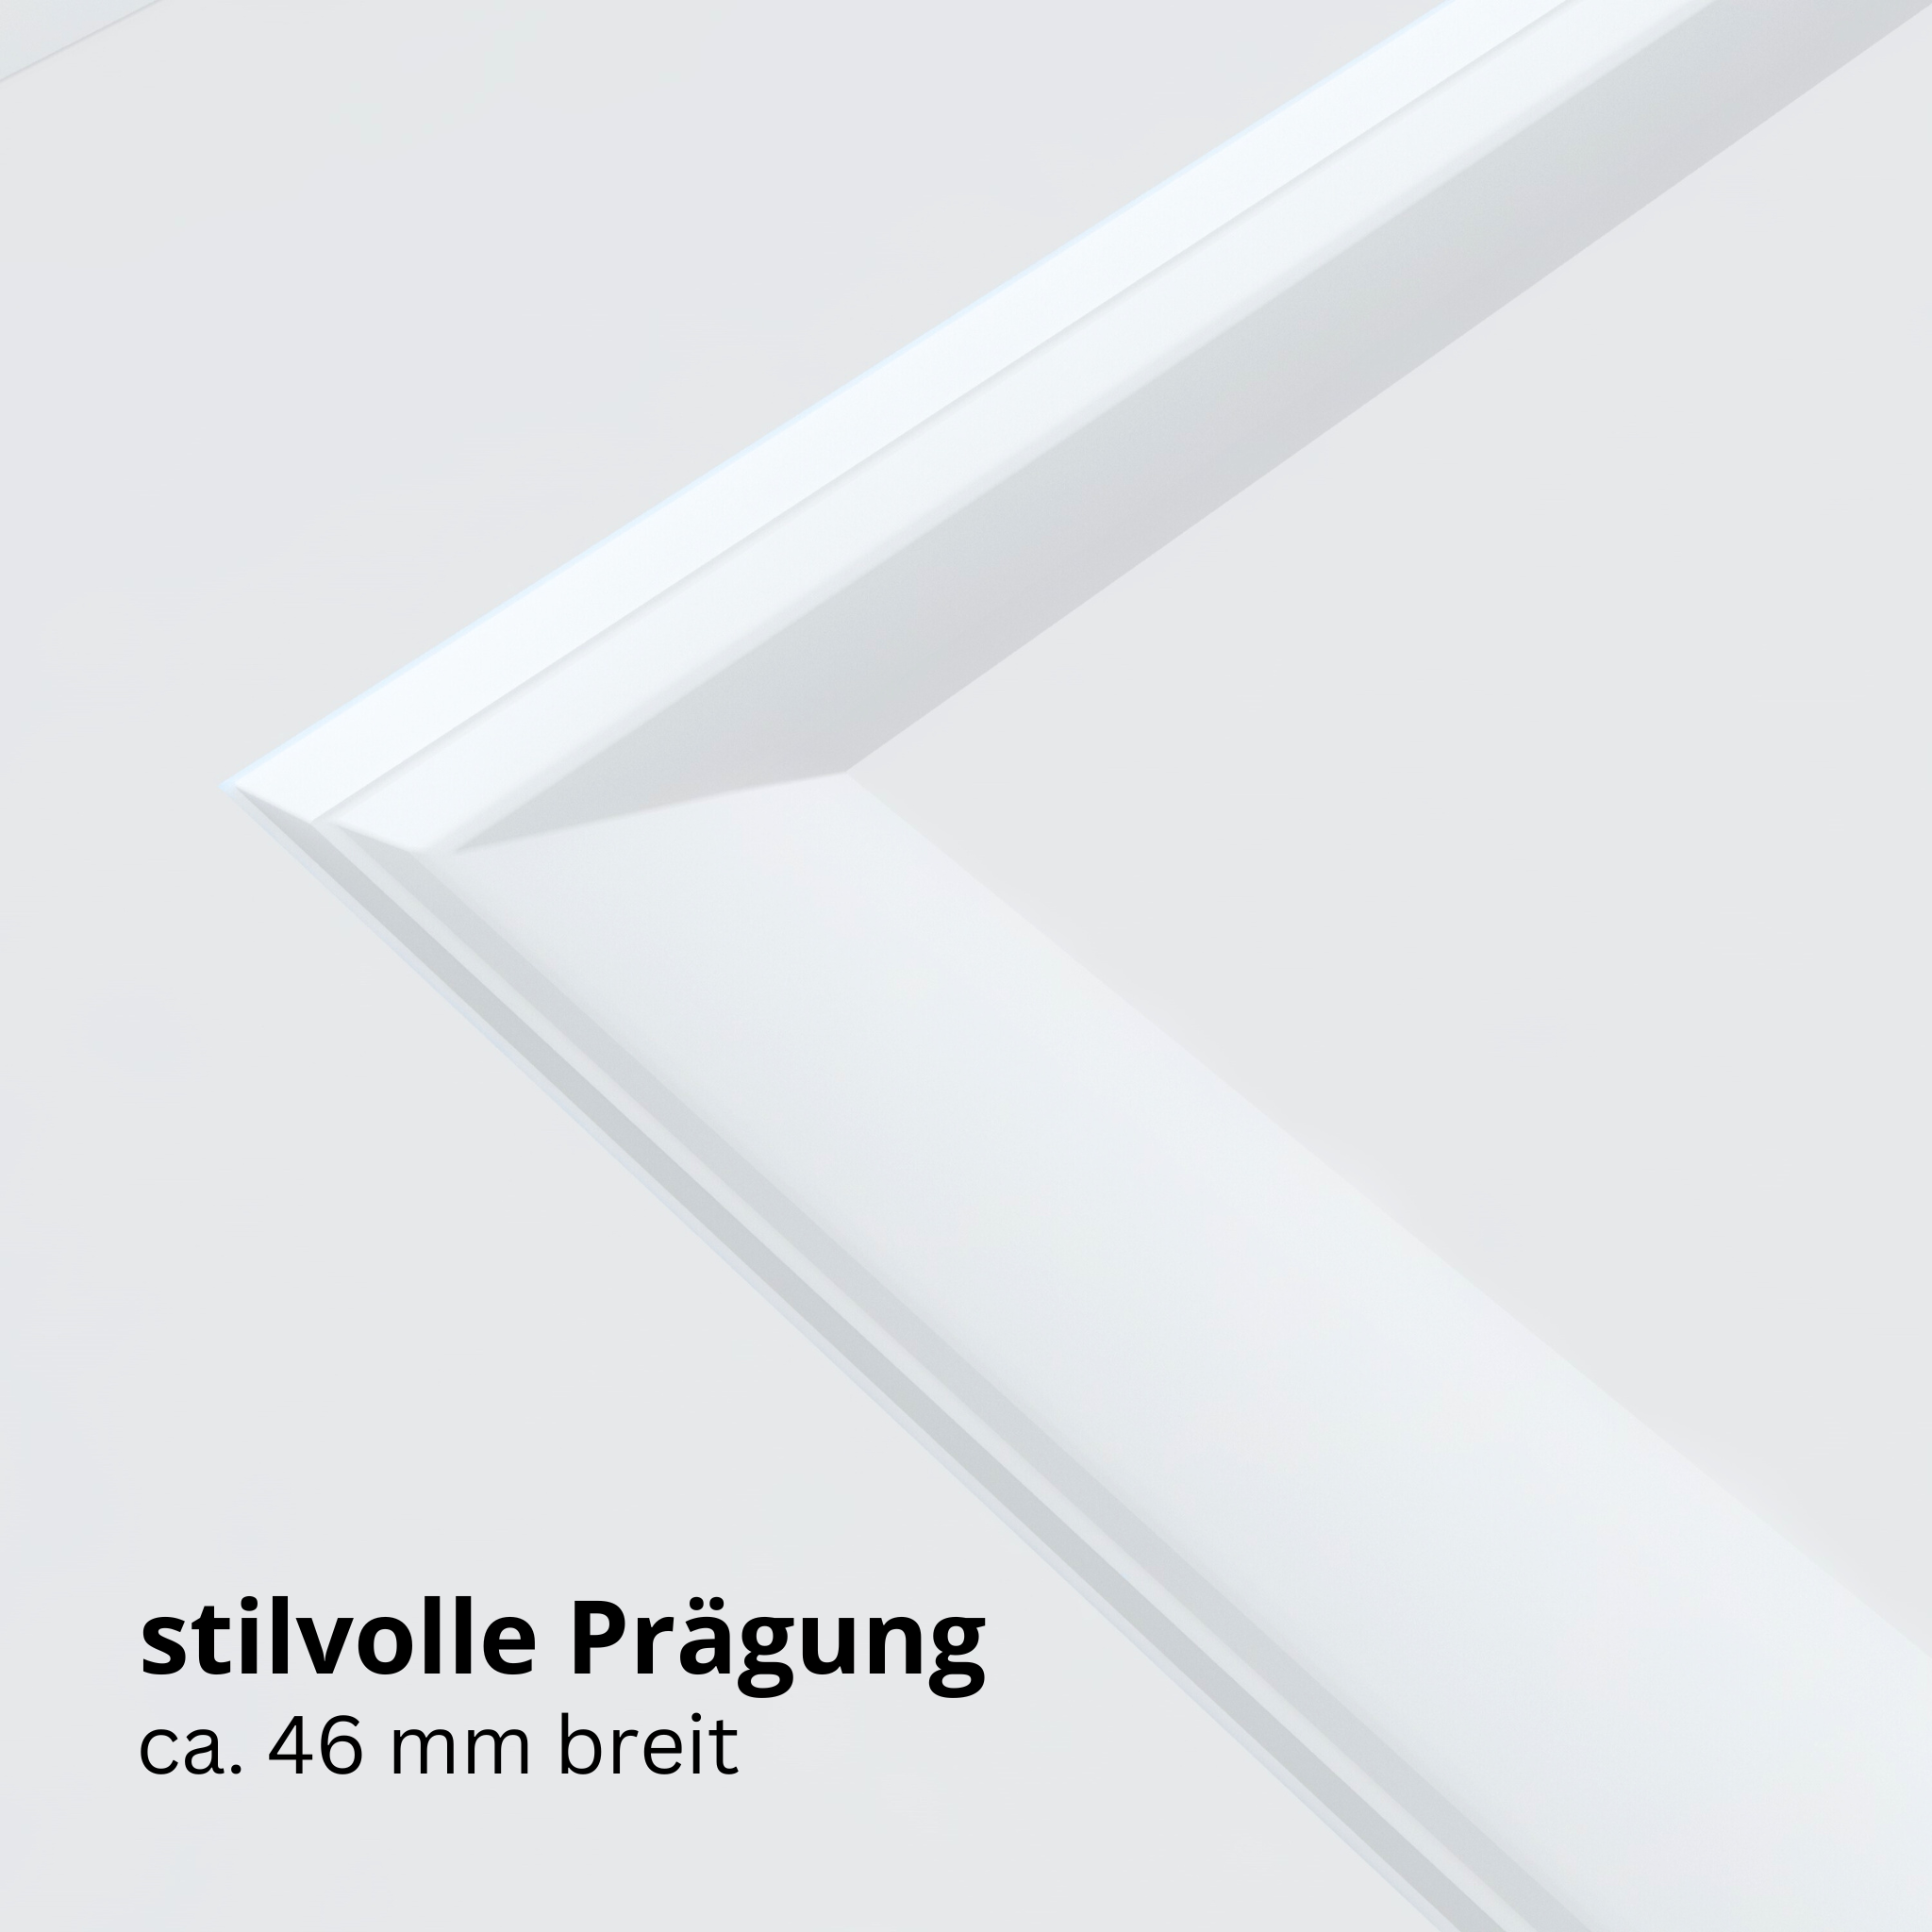 Wohnungseingangstür brillant-weiß 4 Kassetten Designkante SK3 / KK3 - Modell Stiltür K43